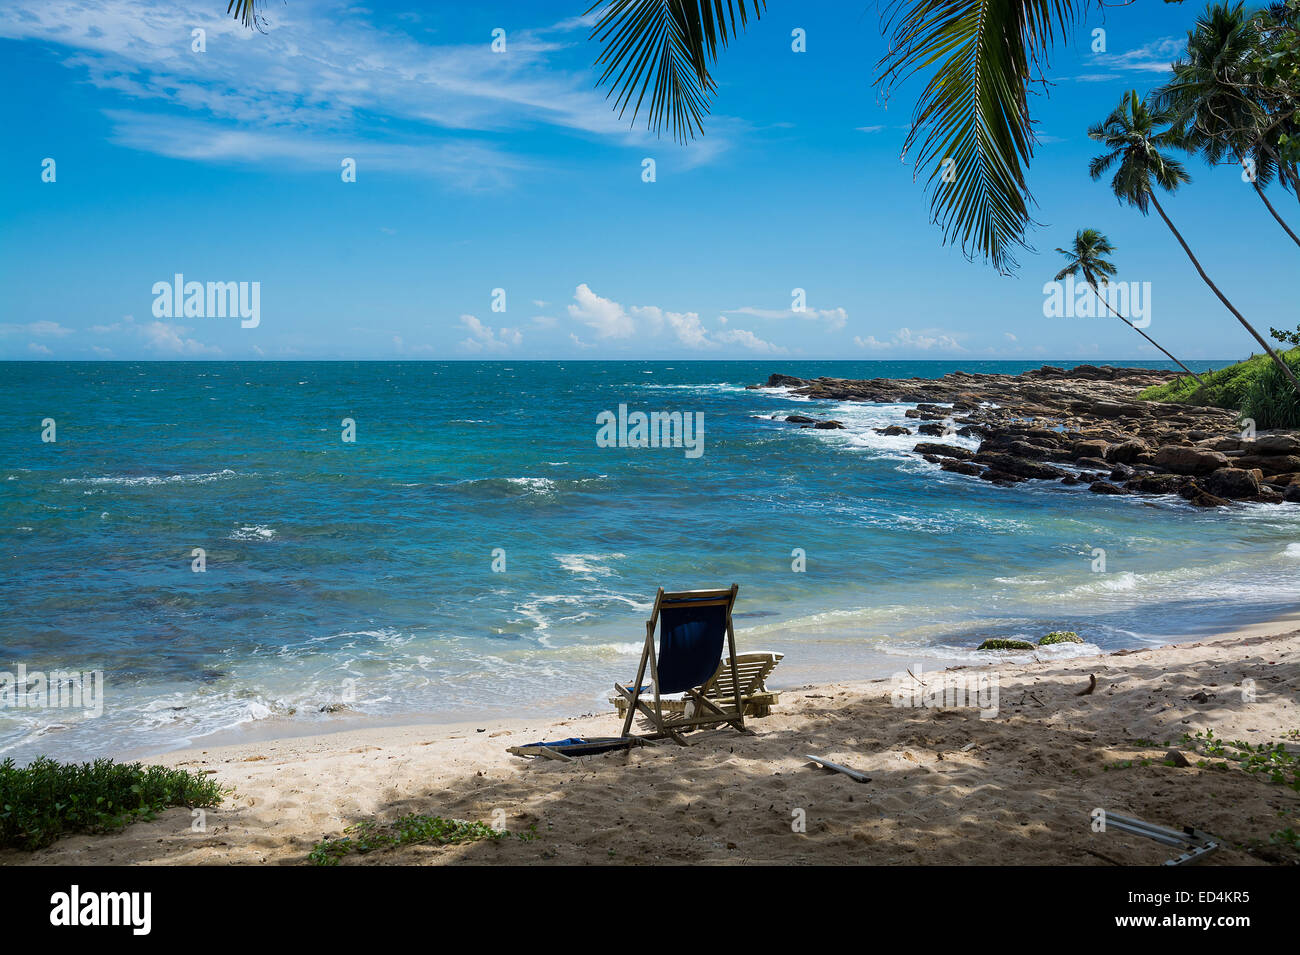 Tropical spiaggia rocciosa con palme di cocco, spiaggia di sabbia e l'oceano. Tangalle, sud della provincia, Sri Lanka, in Asia. Foto Stock